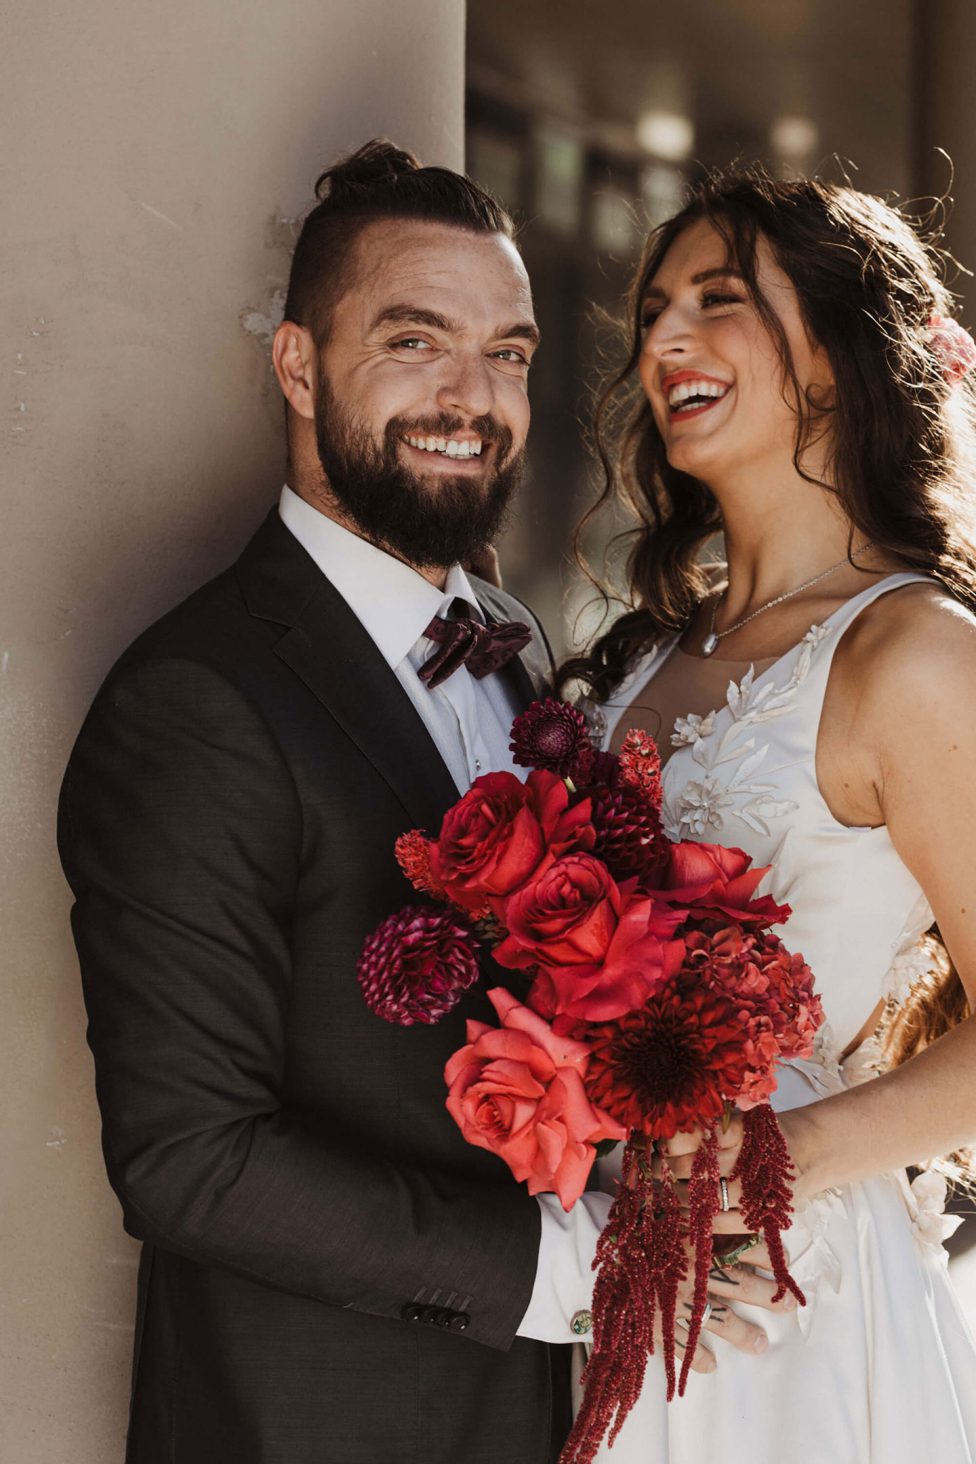 Hochzeitswahn - Ein strahlendes Paar an seinem Hochzeitstag, mit dem Bräutigam in einem klassischen Anzug, der die Braut in einem Spitzenkleid hält, die einen Strauß leuchtend roter Blumen in der Hand hält und einen freudigen Moment teilt.